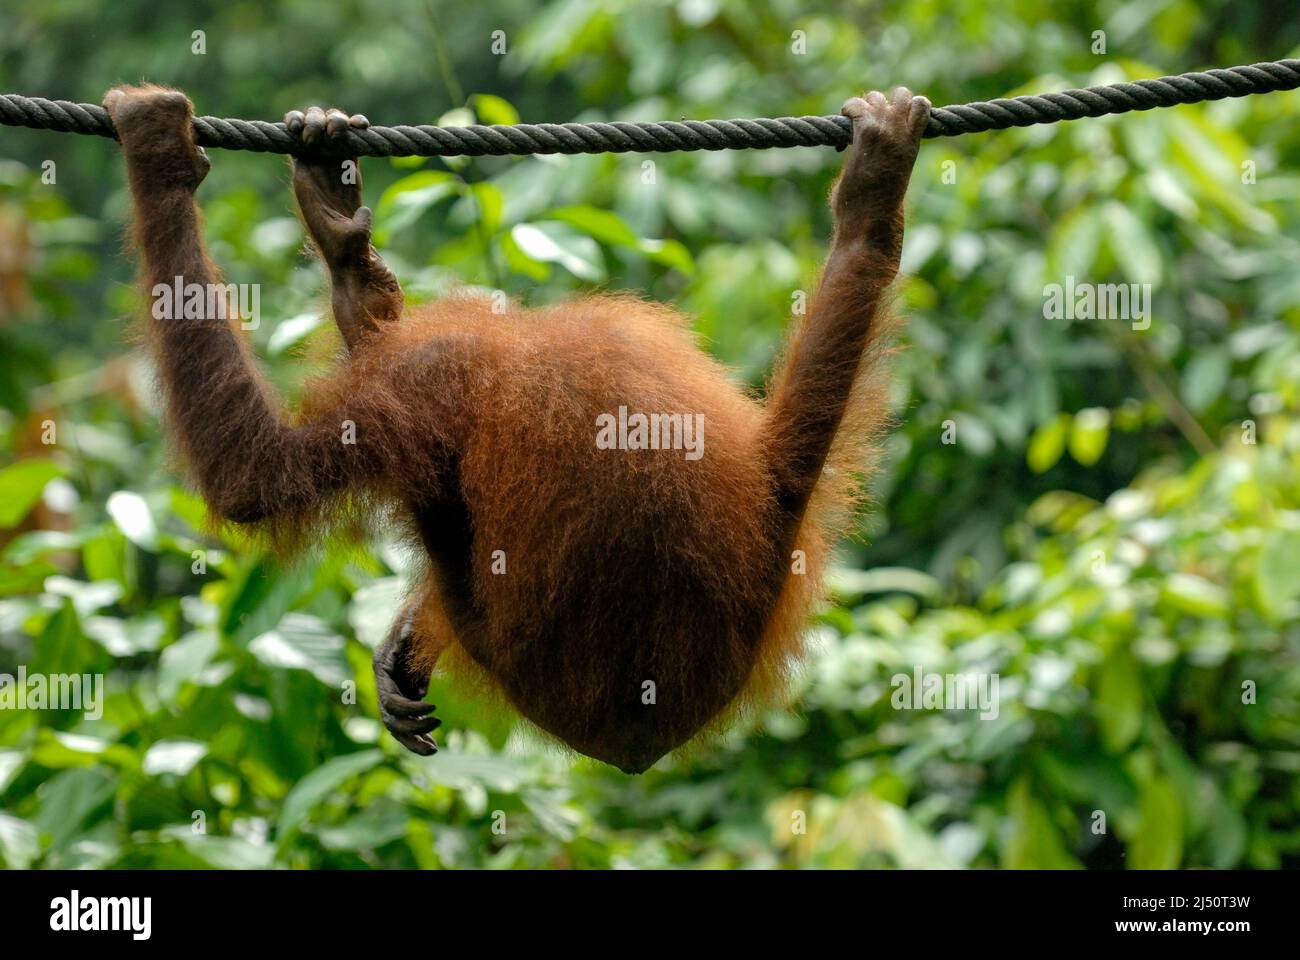 Orangután jugando en el Centro de Rehabilitación de Orangutan Sepilok. Foto de stock